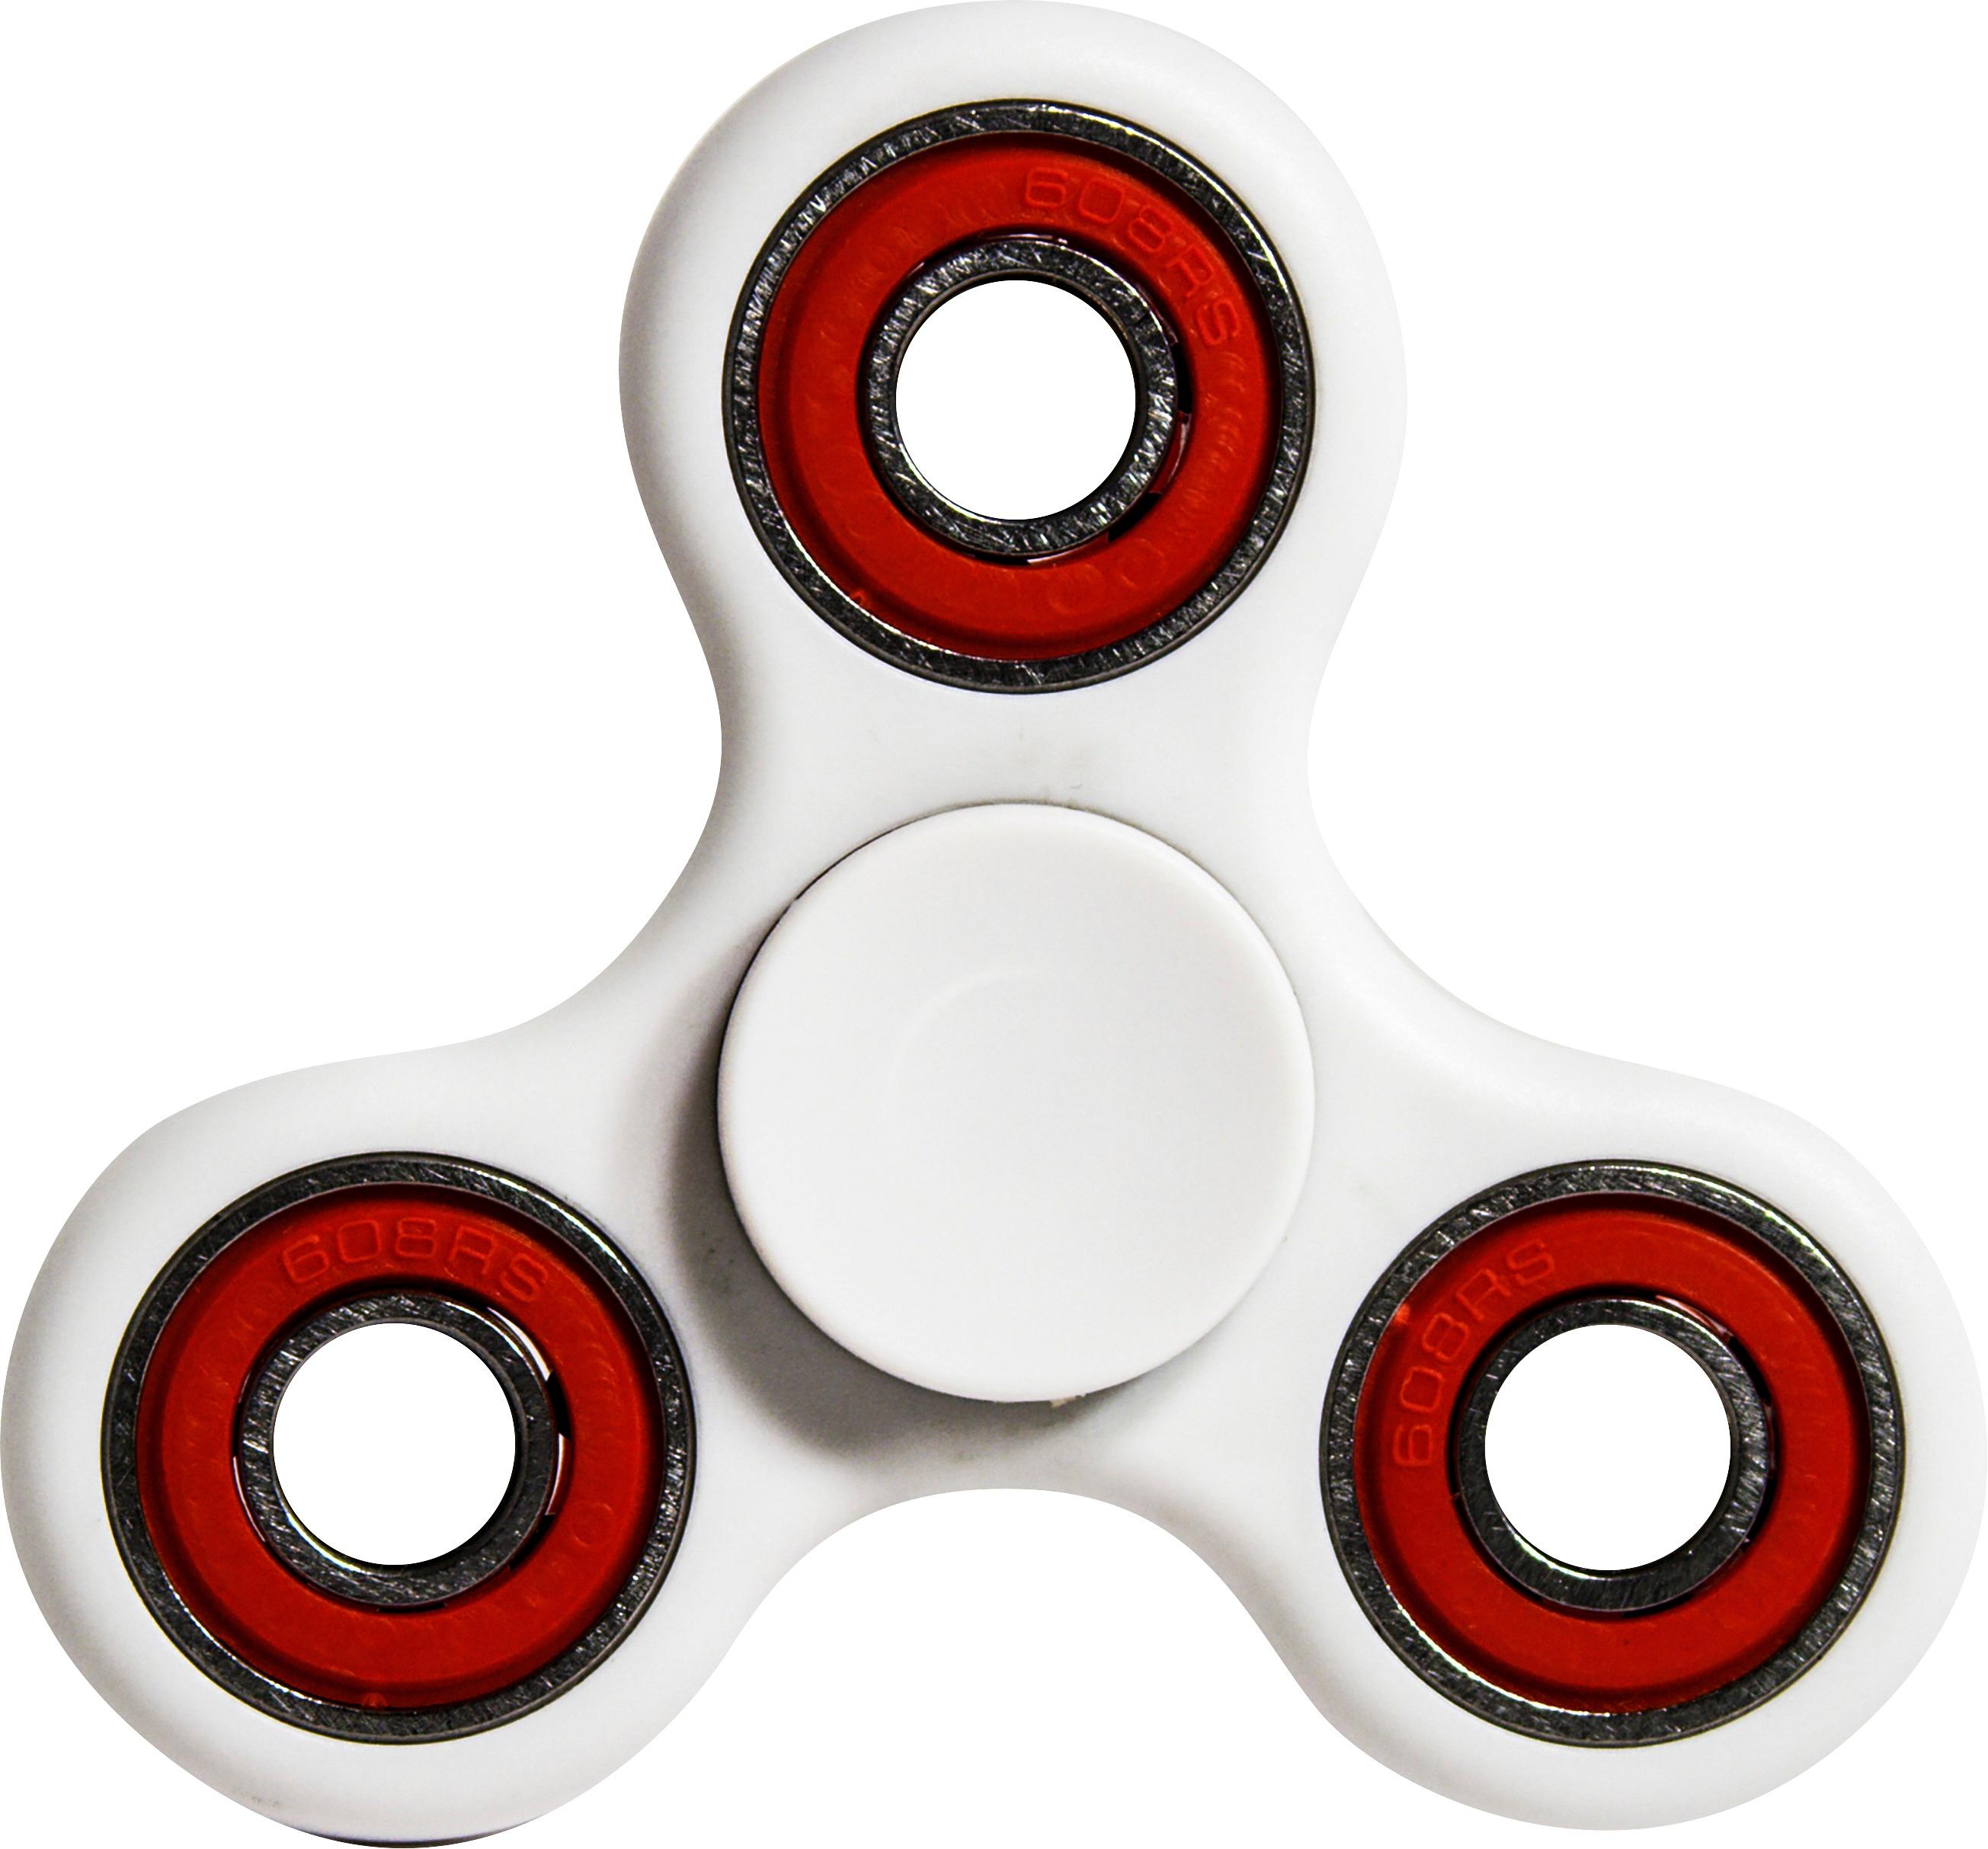 fidget spinner toy